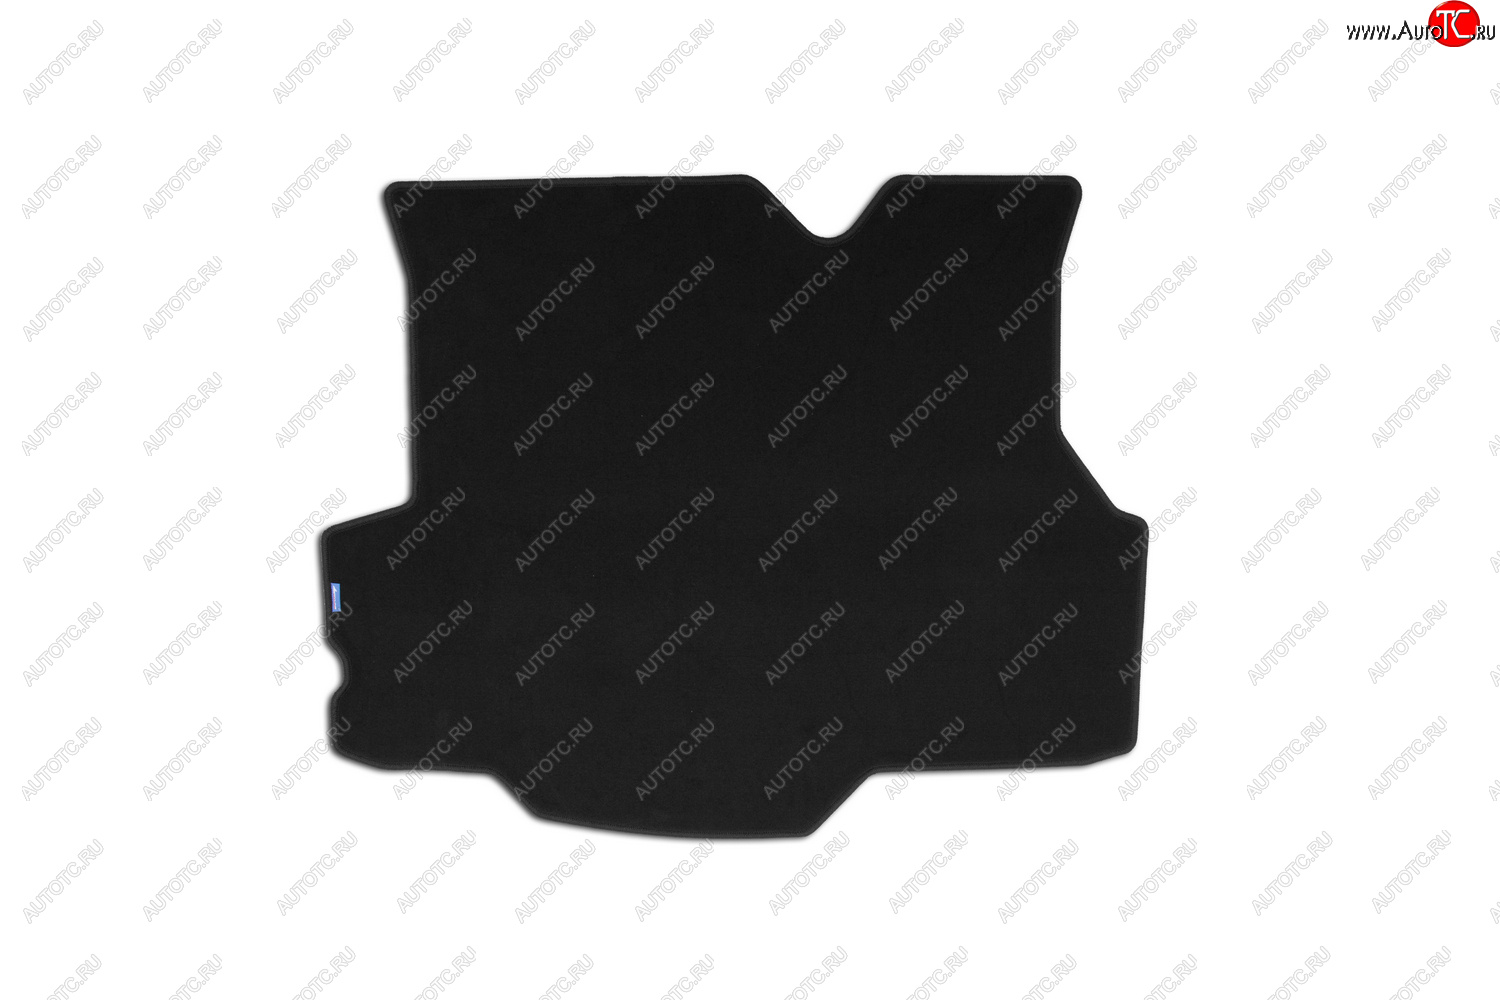 549 р. Коврик в багажник (текстиль, чёрный) Element Ford Fiesta 6 седан рестайлинг (2012-2019)